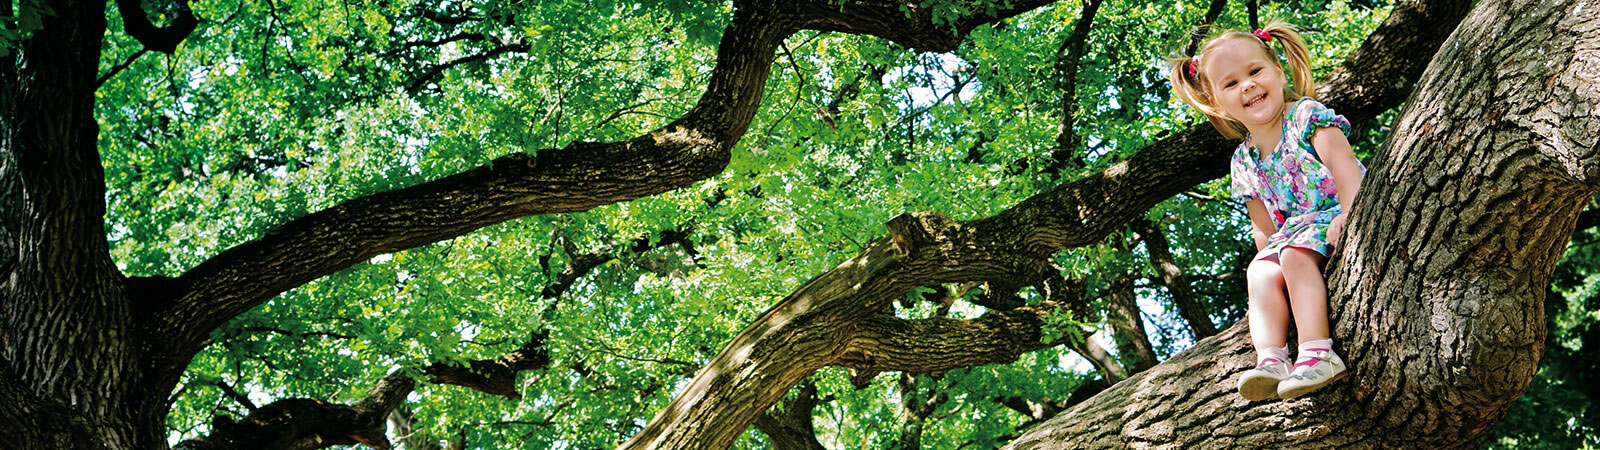 Grüner Baum wie das Osmo Logo – Uns ist Nachhaltigkeit sehr wichtig